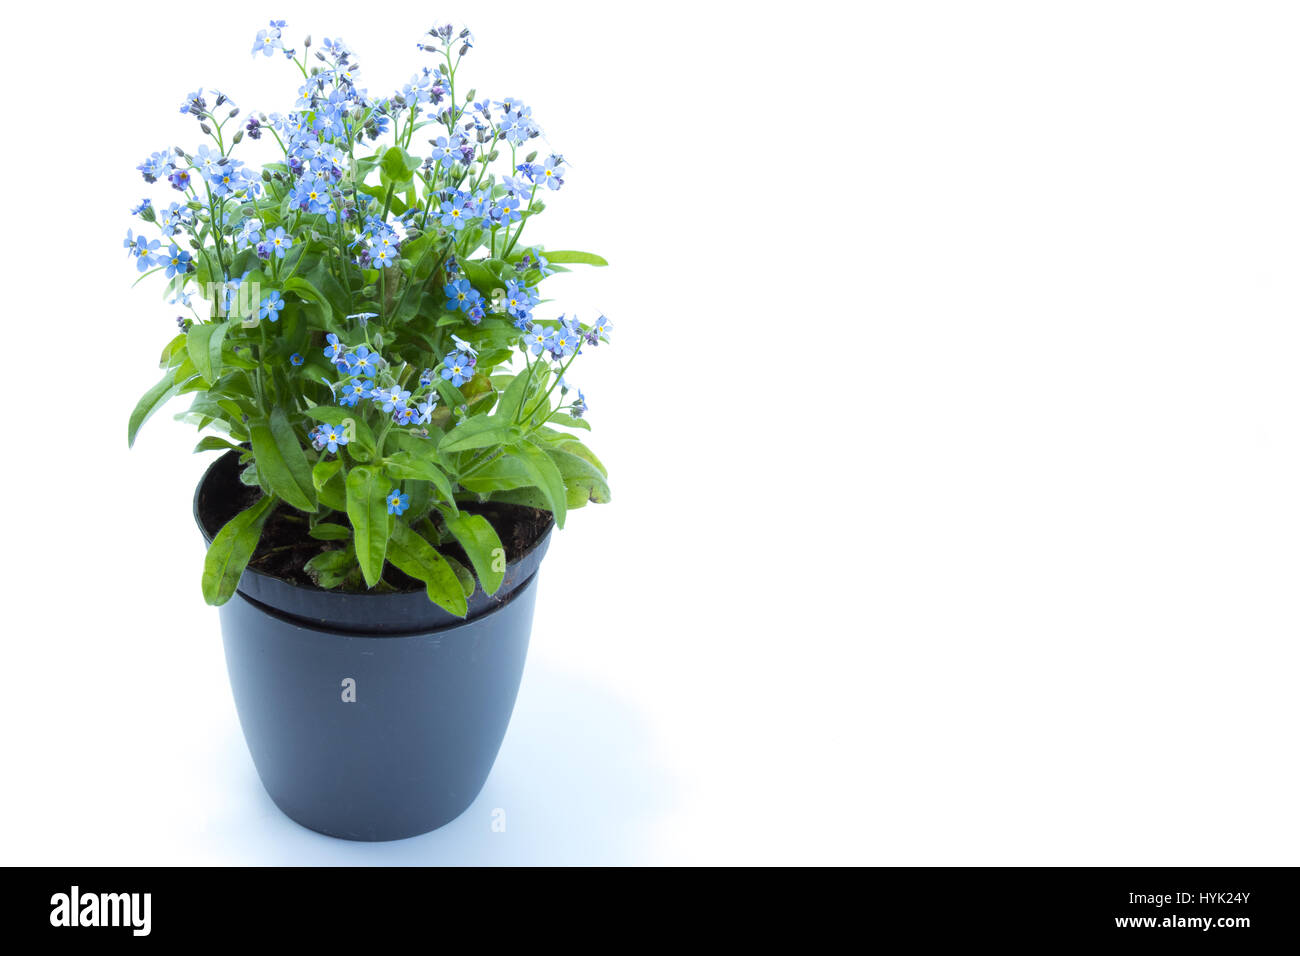 Forget me not (Myosotis scorpioides) à fleurs bleues dans un pot bleu foncé Banque D'Images